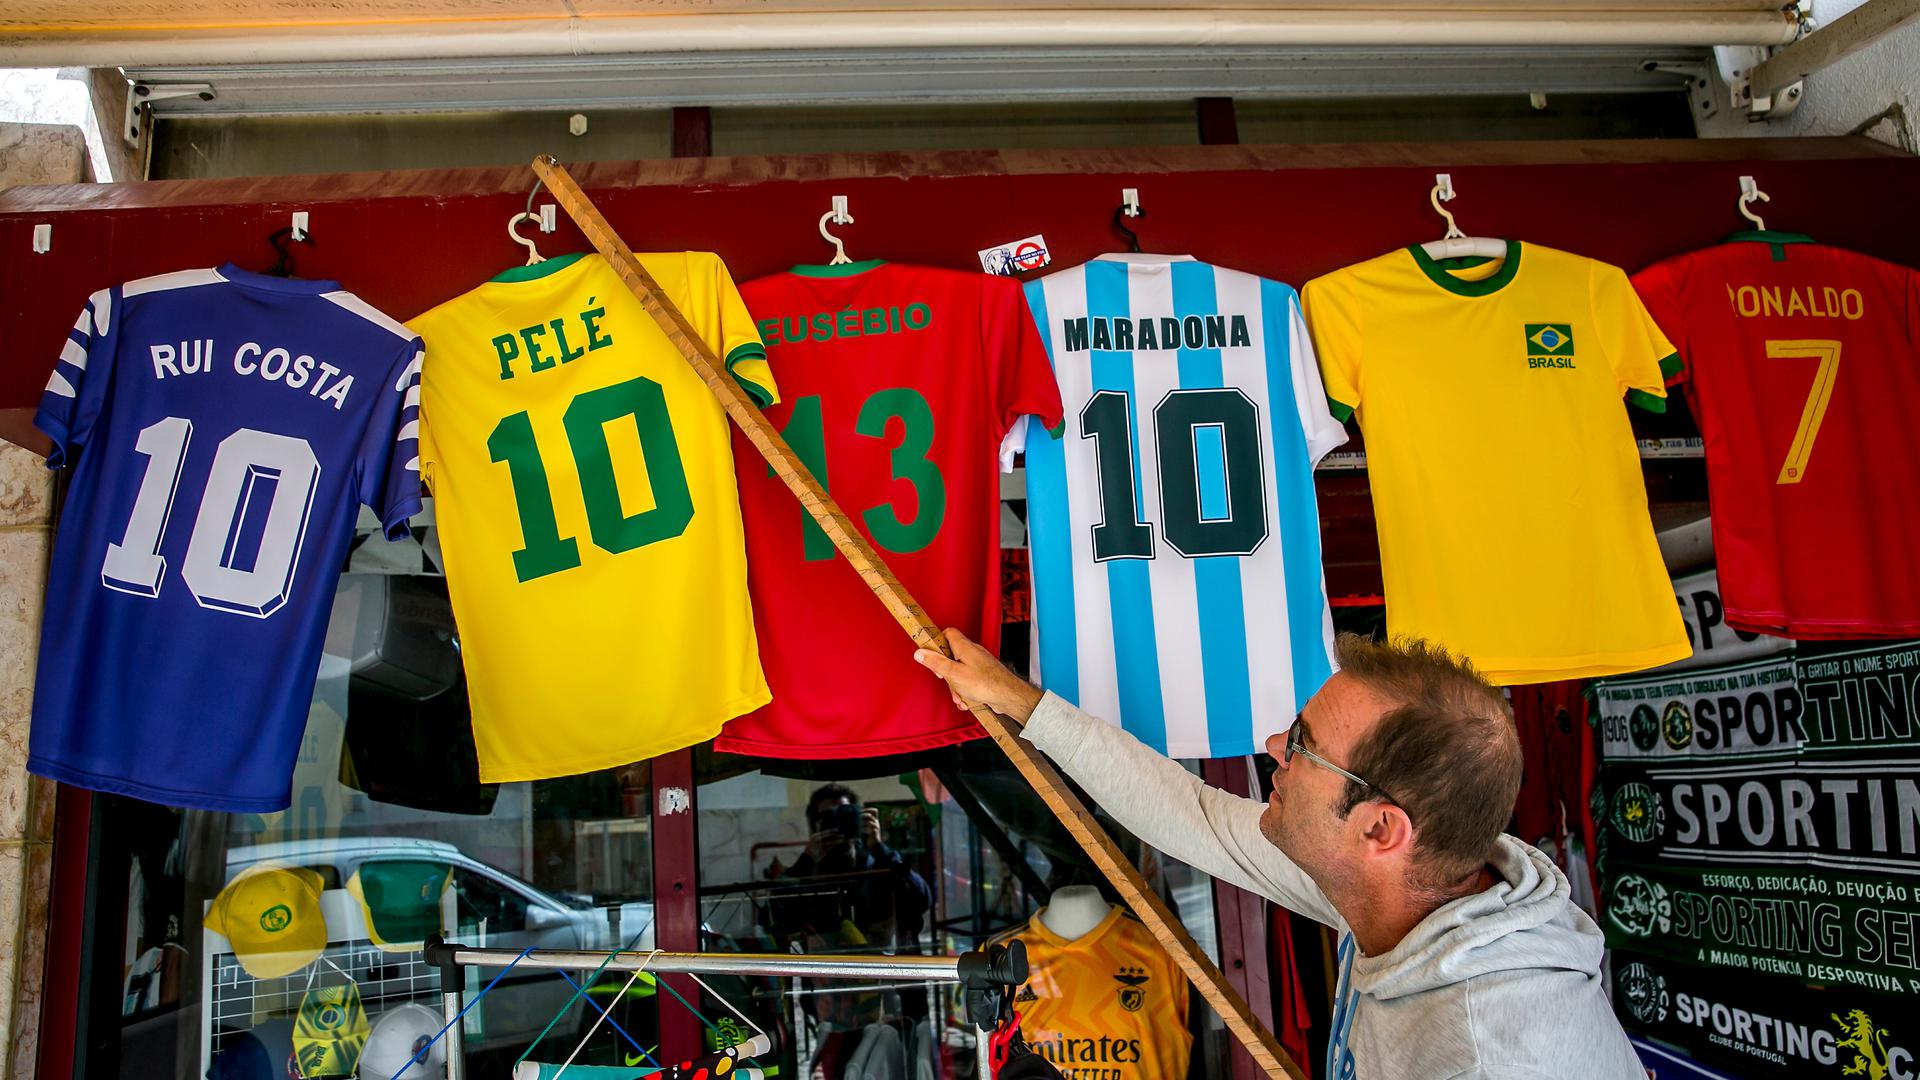 Na Costa, há referências do Brasil a cada esquina. O rei Pelé não podia faltar.